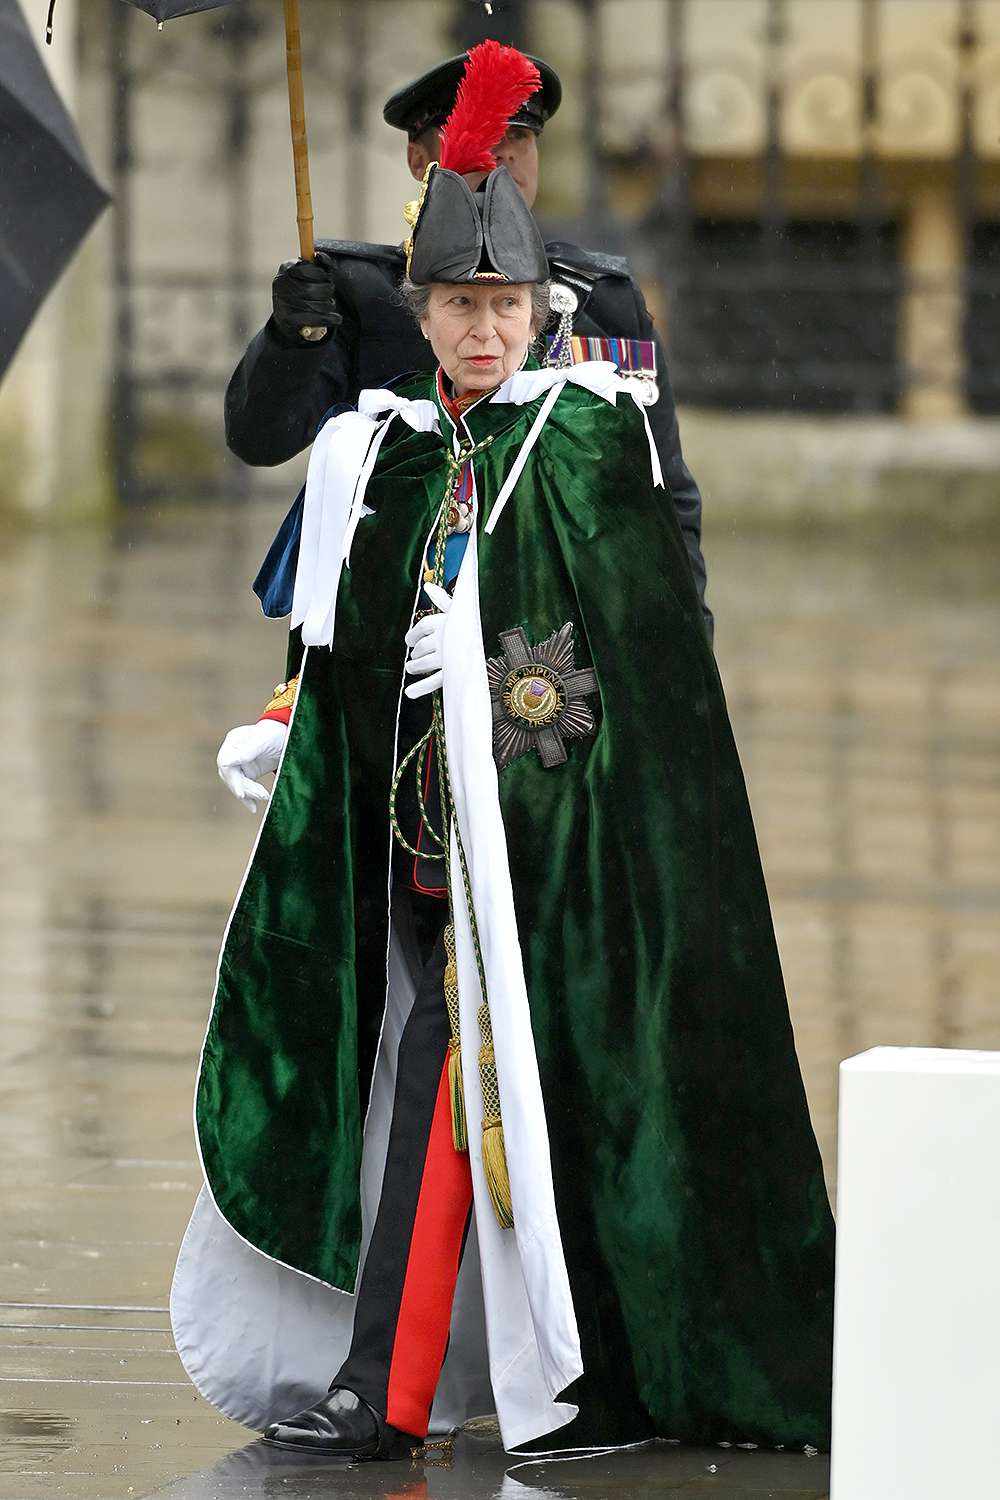 Thời trang hoàng gia thanh lịch trong lễ đăng quang vua Charles III | ELLE